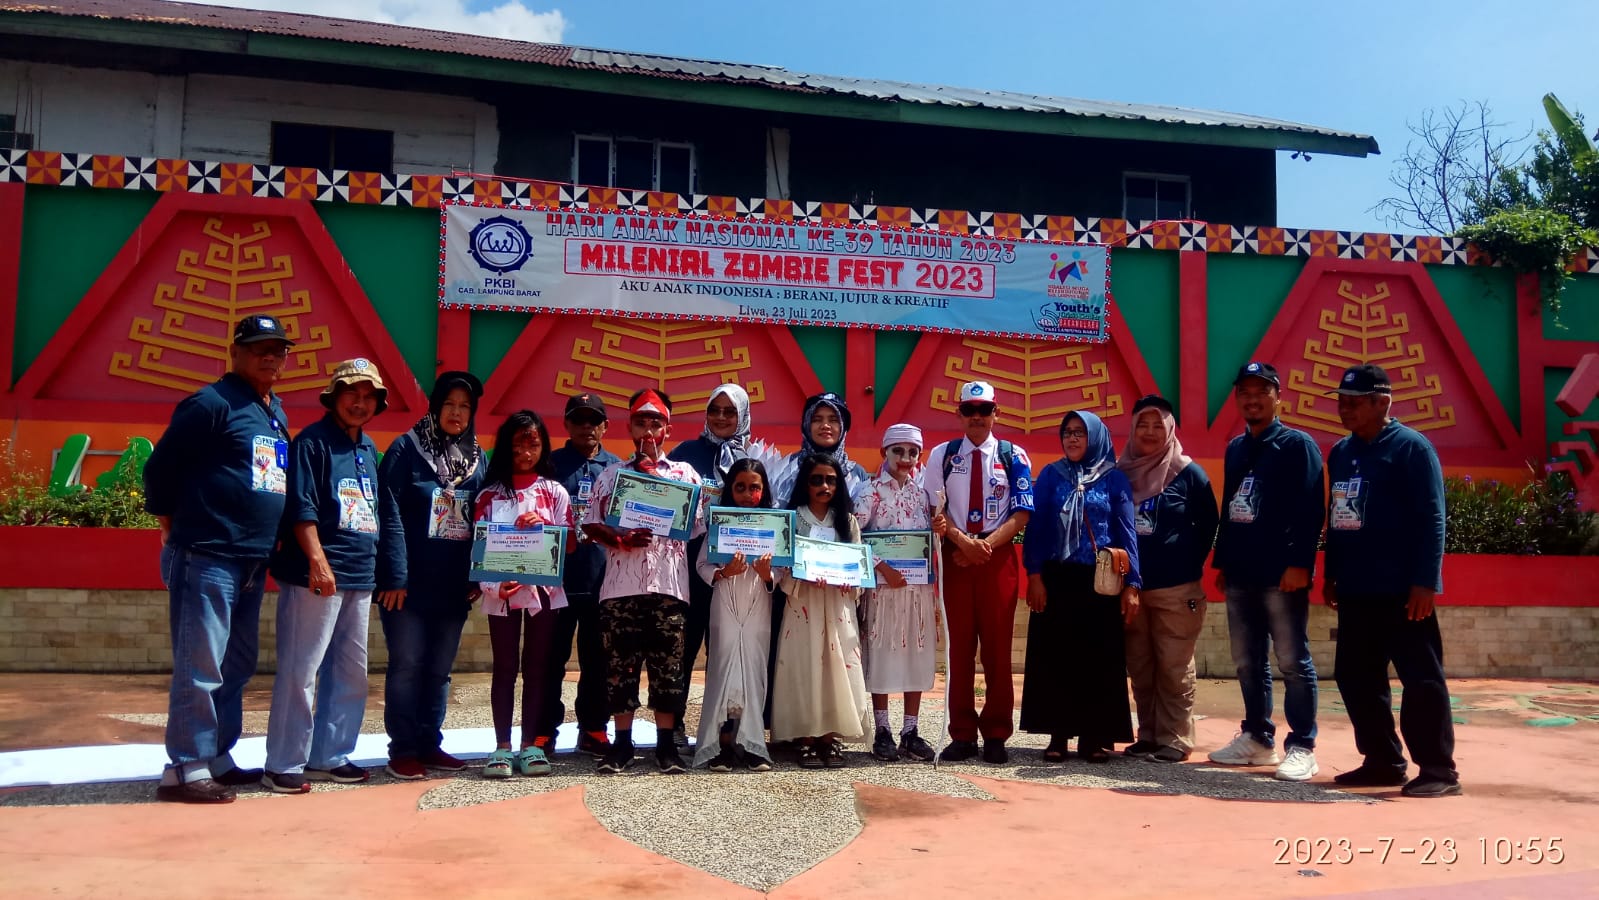 Lima Siswa SD di Lampung Barat Raih Juara Pada Ajang Milenial Zombie Fest 2023 